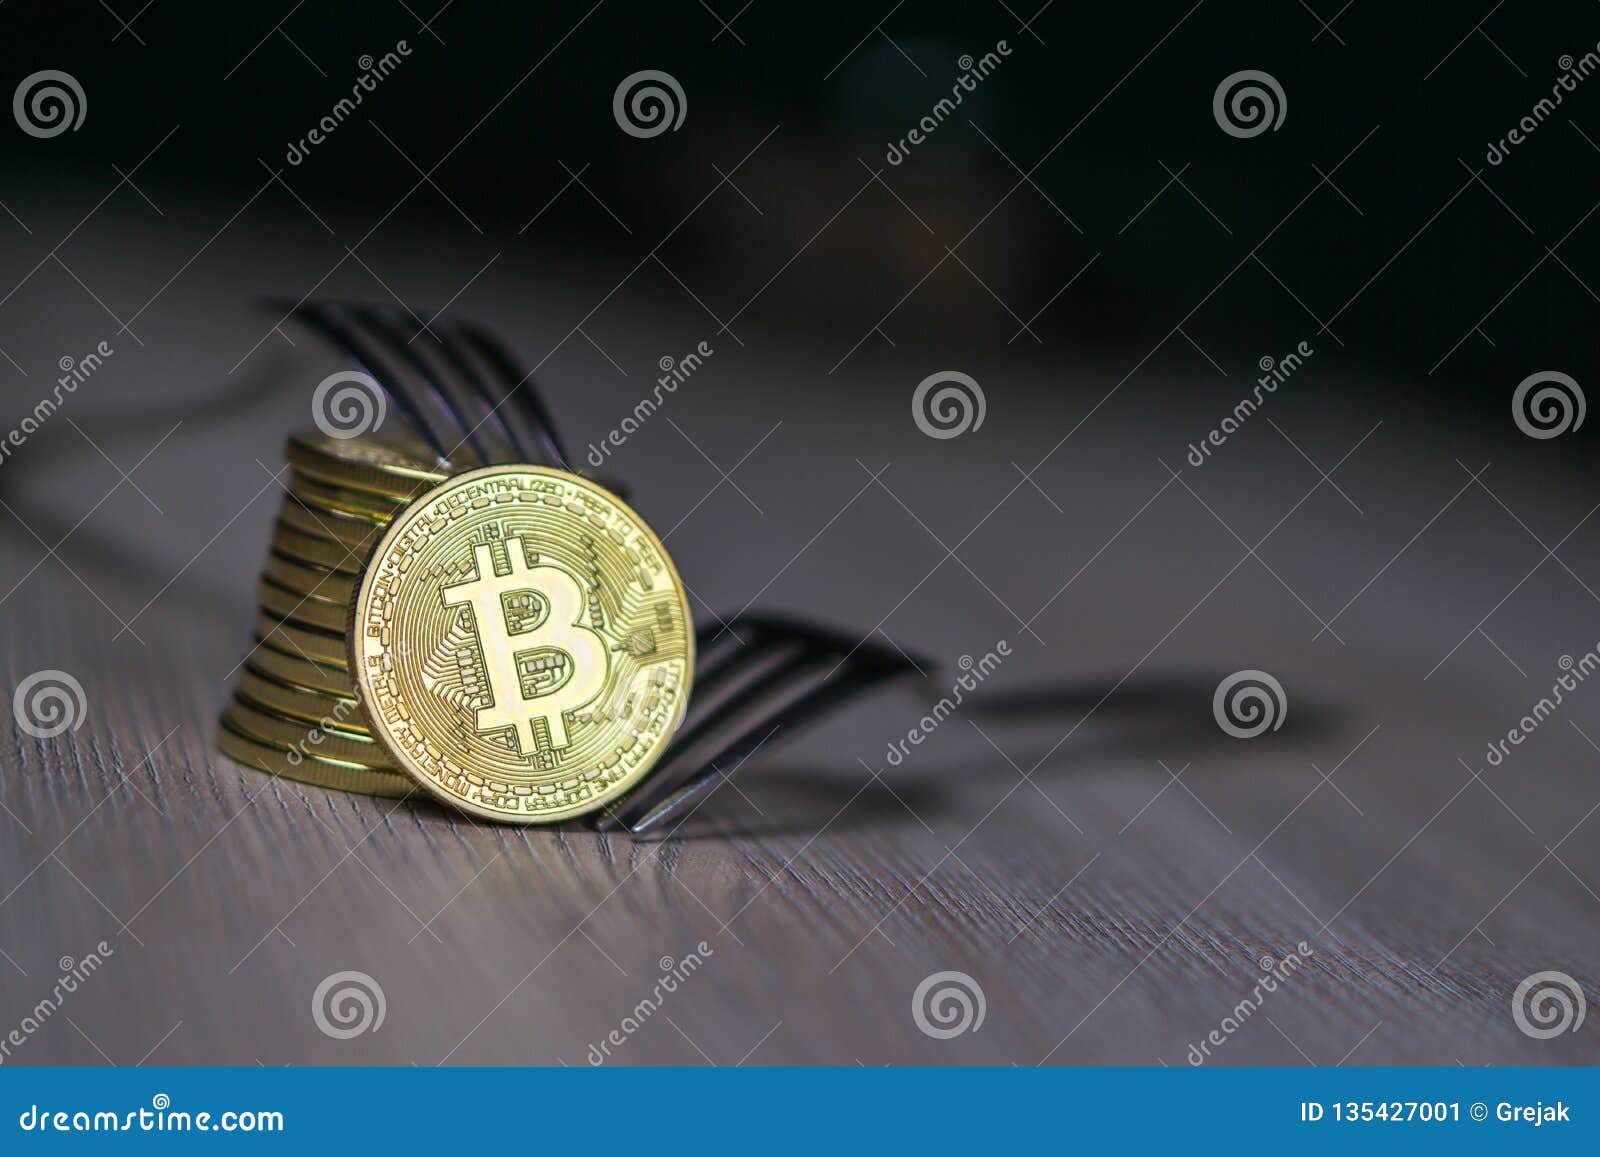 bitcoin cash hard fork new coin